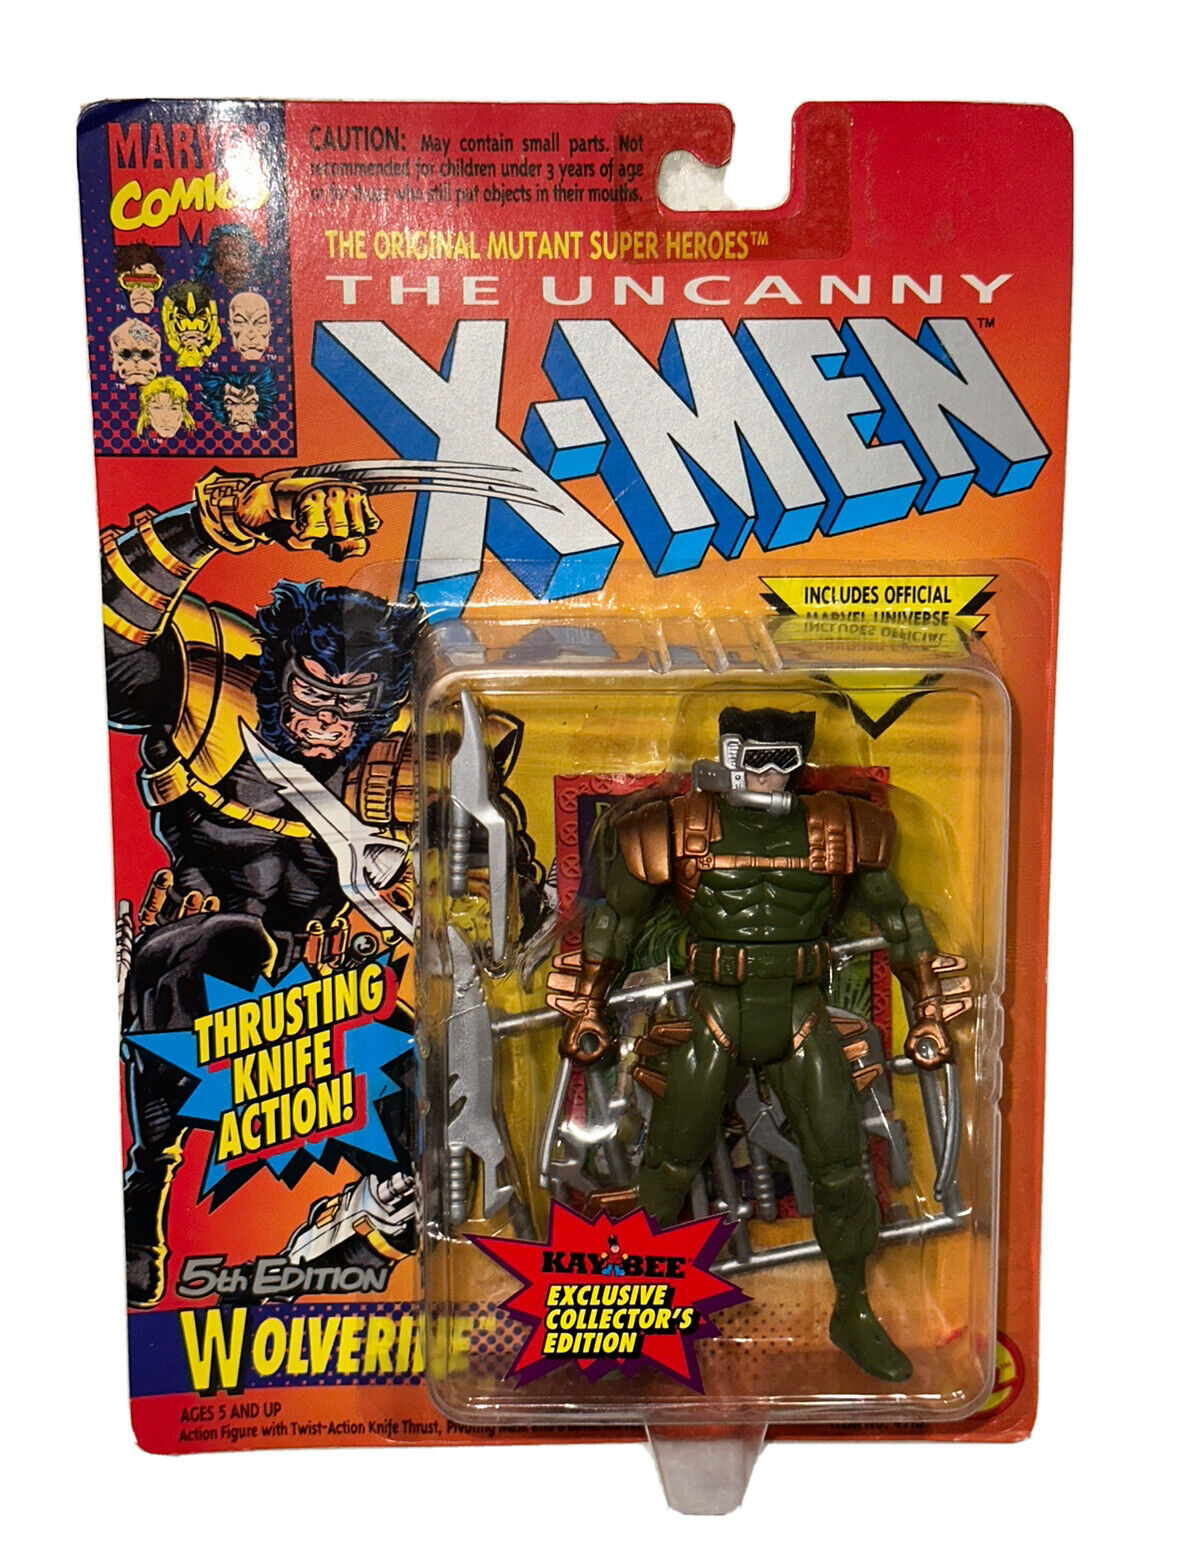 1993 Toy Biz The Uncanny XMen Wolverine 5th Edition KB Green Suit Action Figure